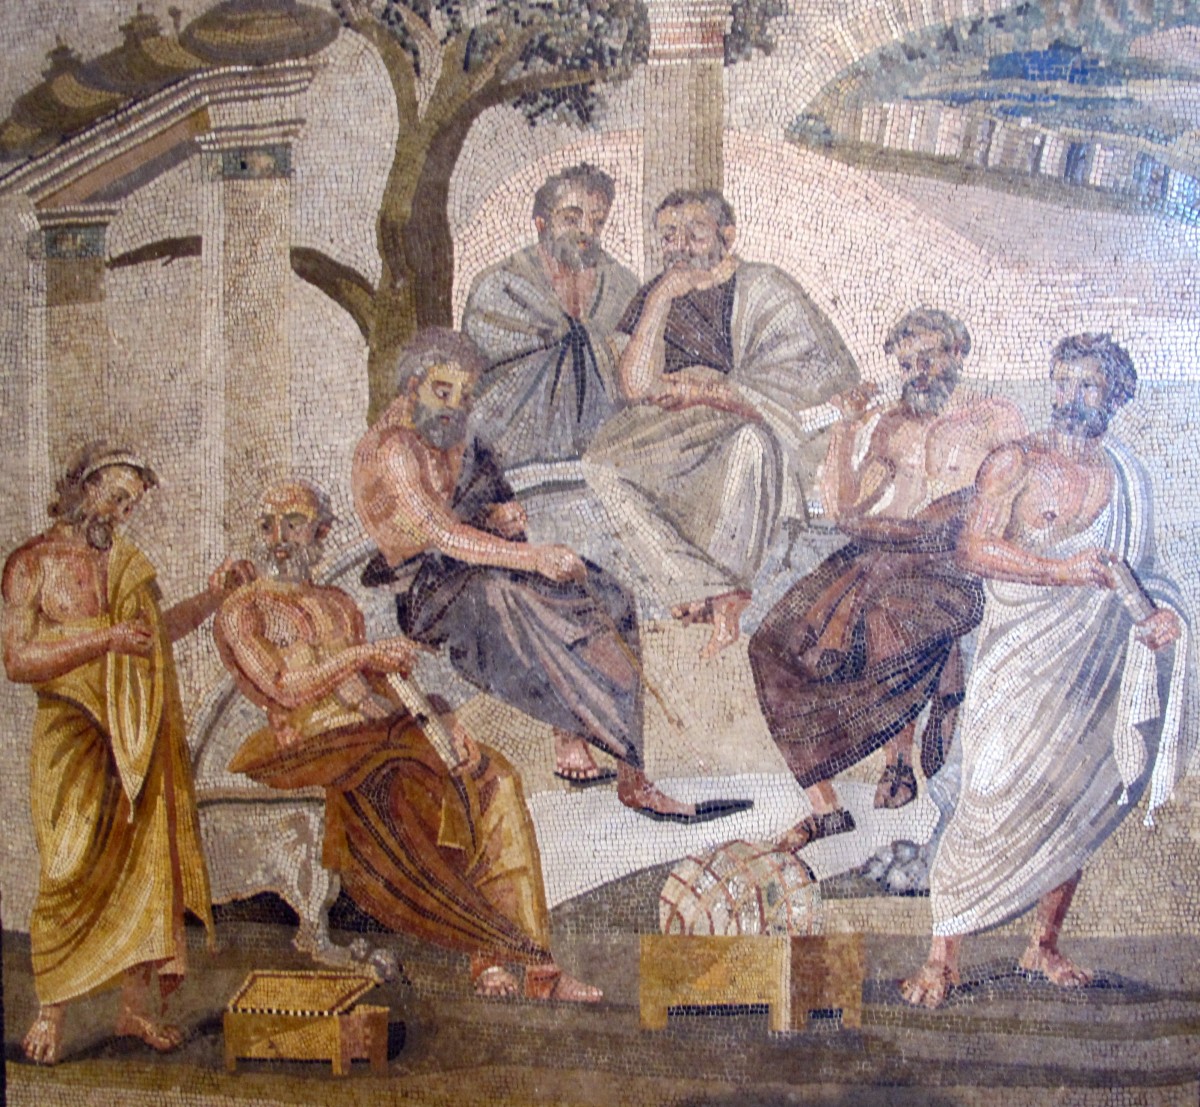 Yedi bilge adam mozaiği, Napoli Ulusal Arkeoloji Müzesi